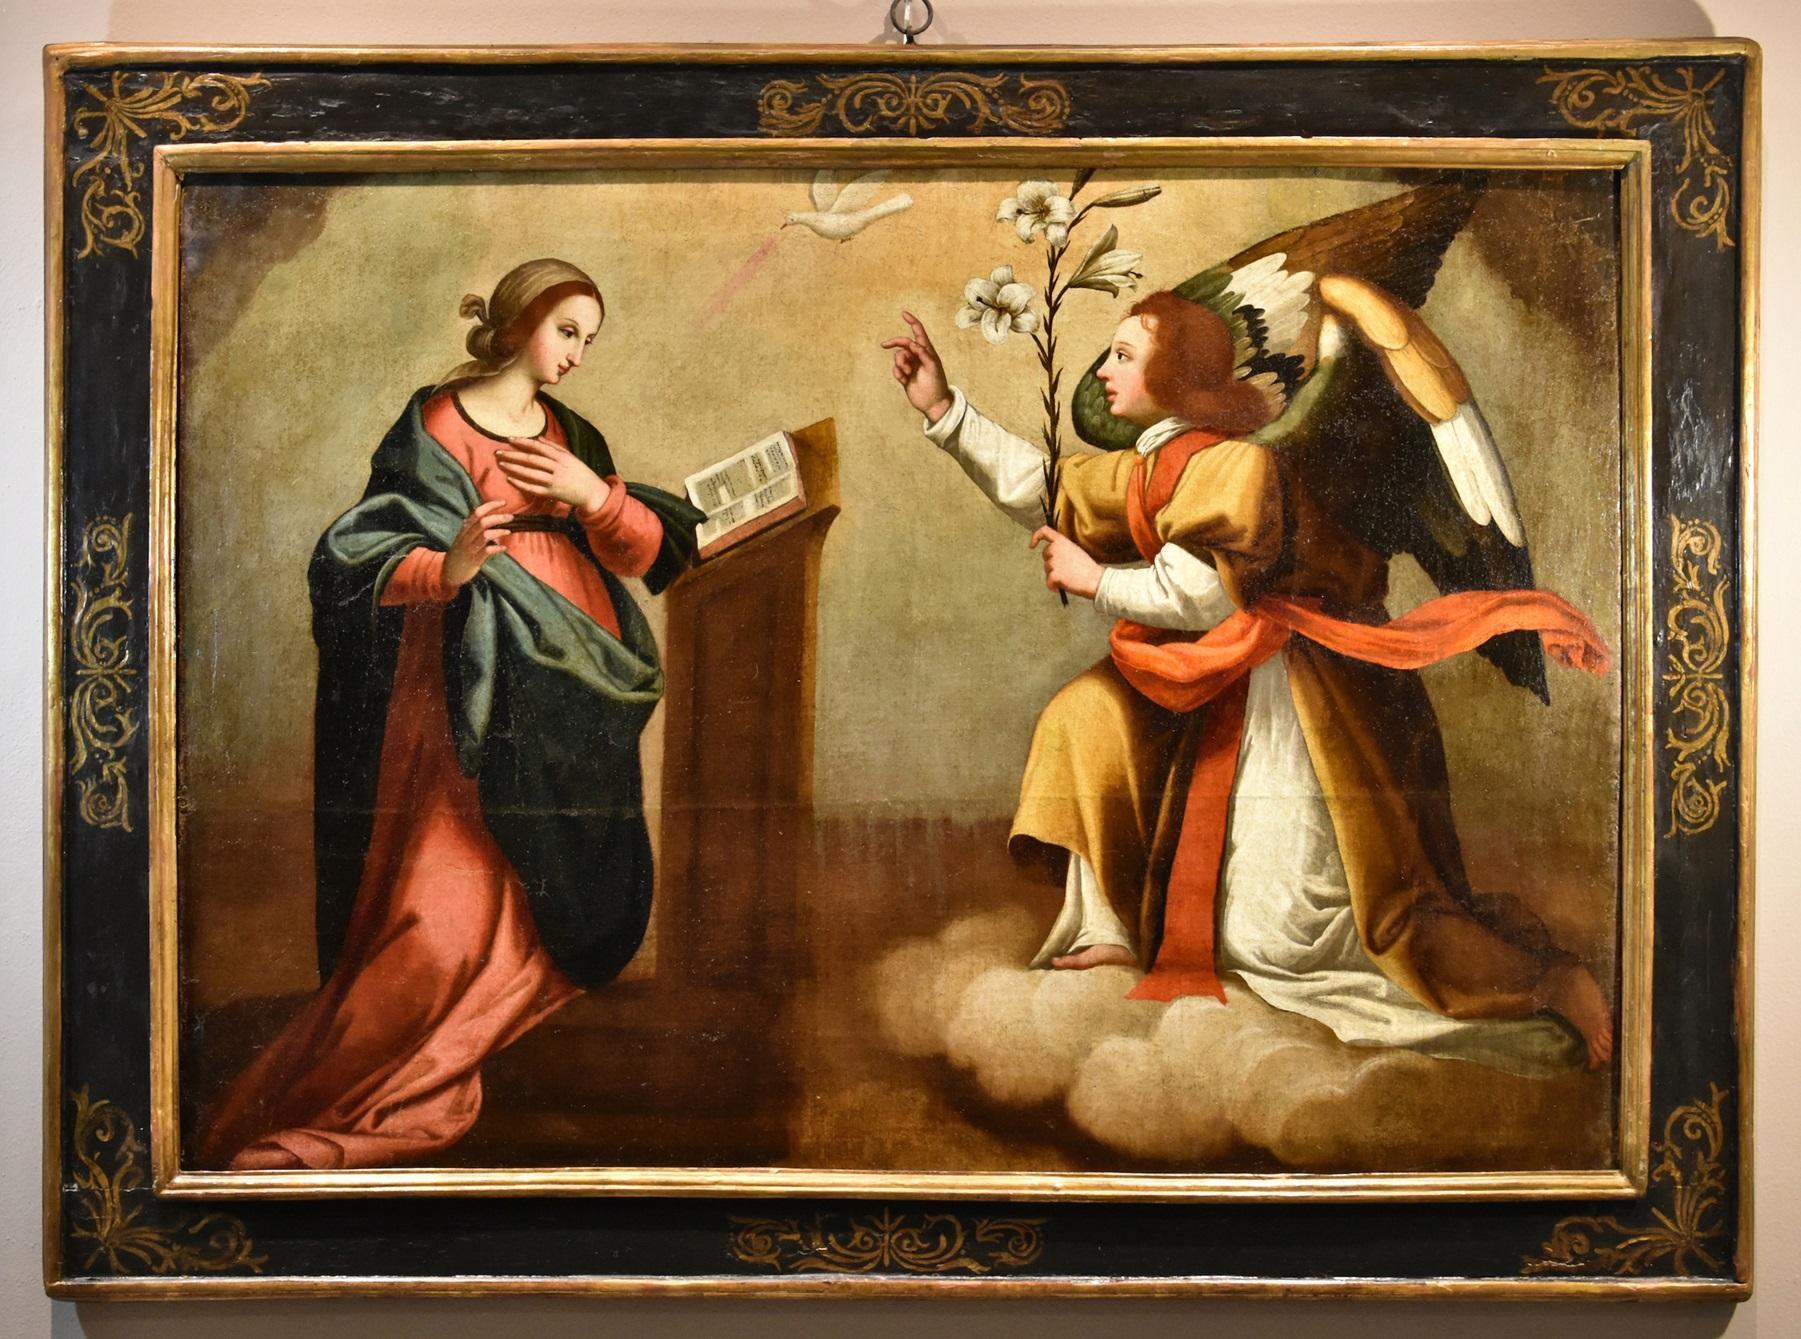 Annunciation Ceraiolo, Gemälde Öl auf Leinwand, 16. Jahrhundert, Alter Meister Firenze, Italien – Painting von Antonio Del Ceraiolo (active In Florence, Early 16th Century)